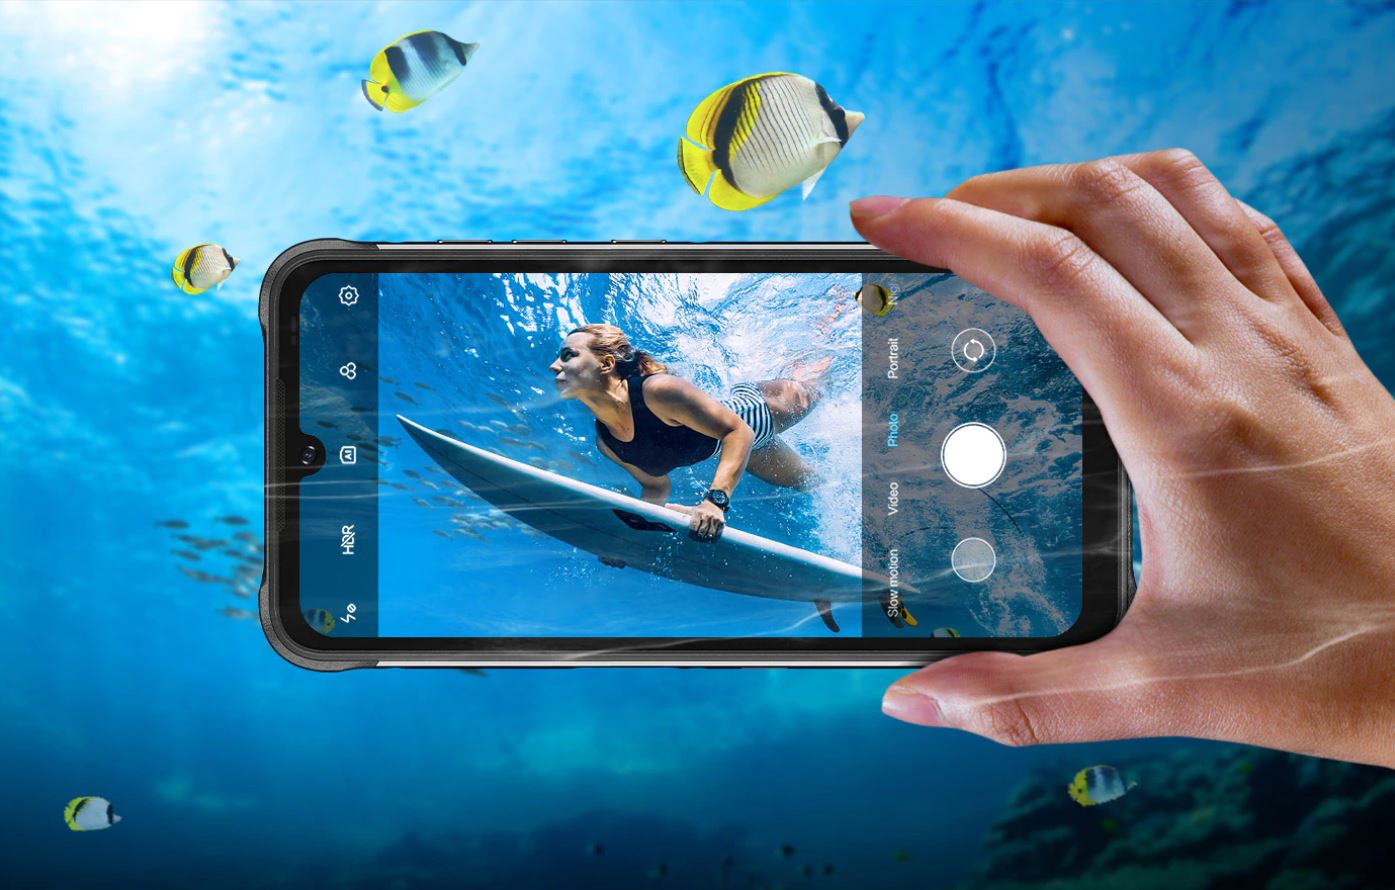 nowe produkty Aliexpress - Umidigi Bison Pro - nowy smartfon rugged - robienie zdjęć pod wodą